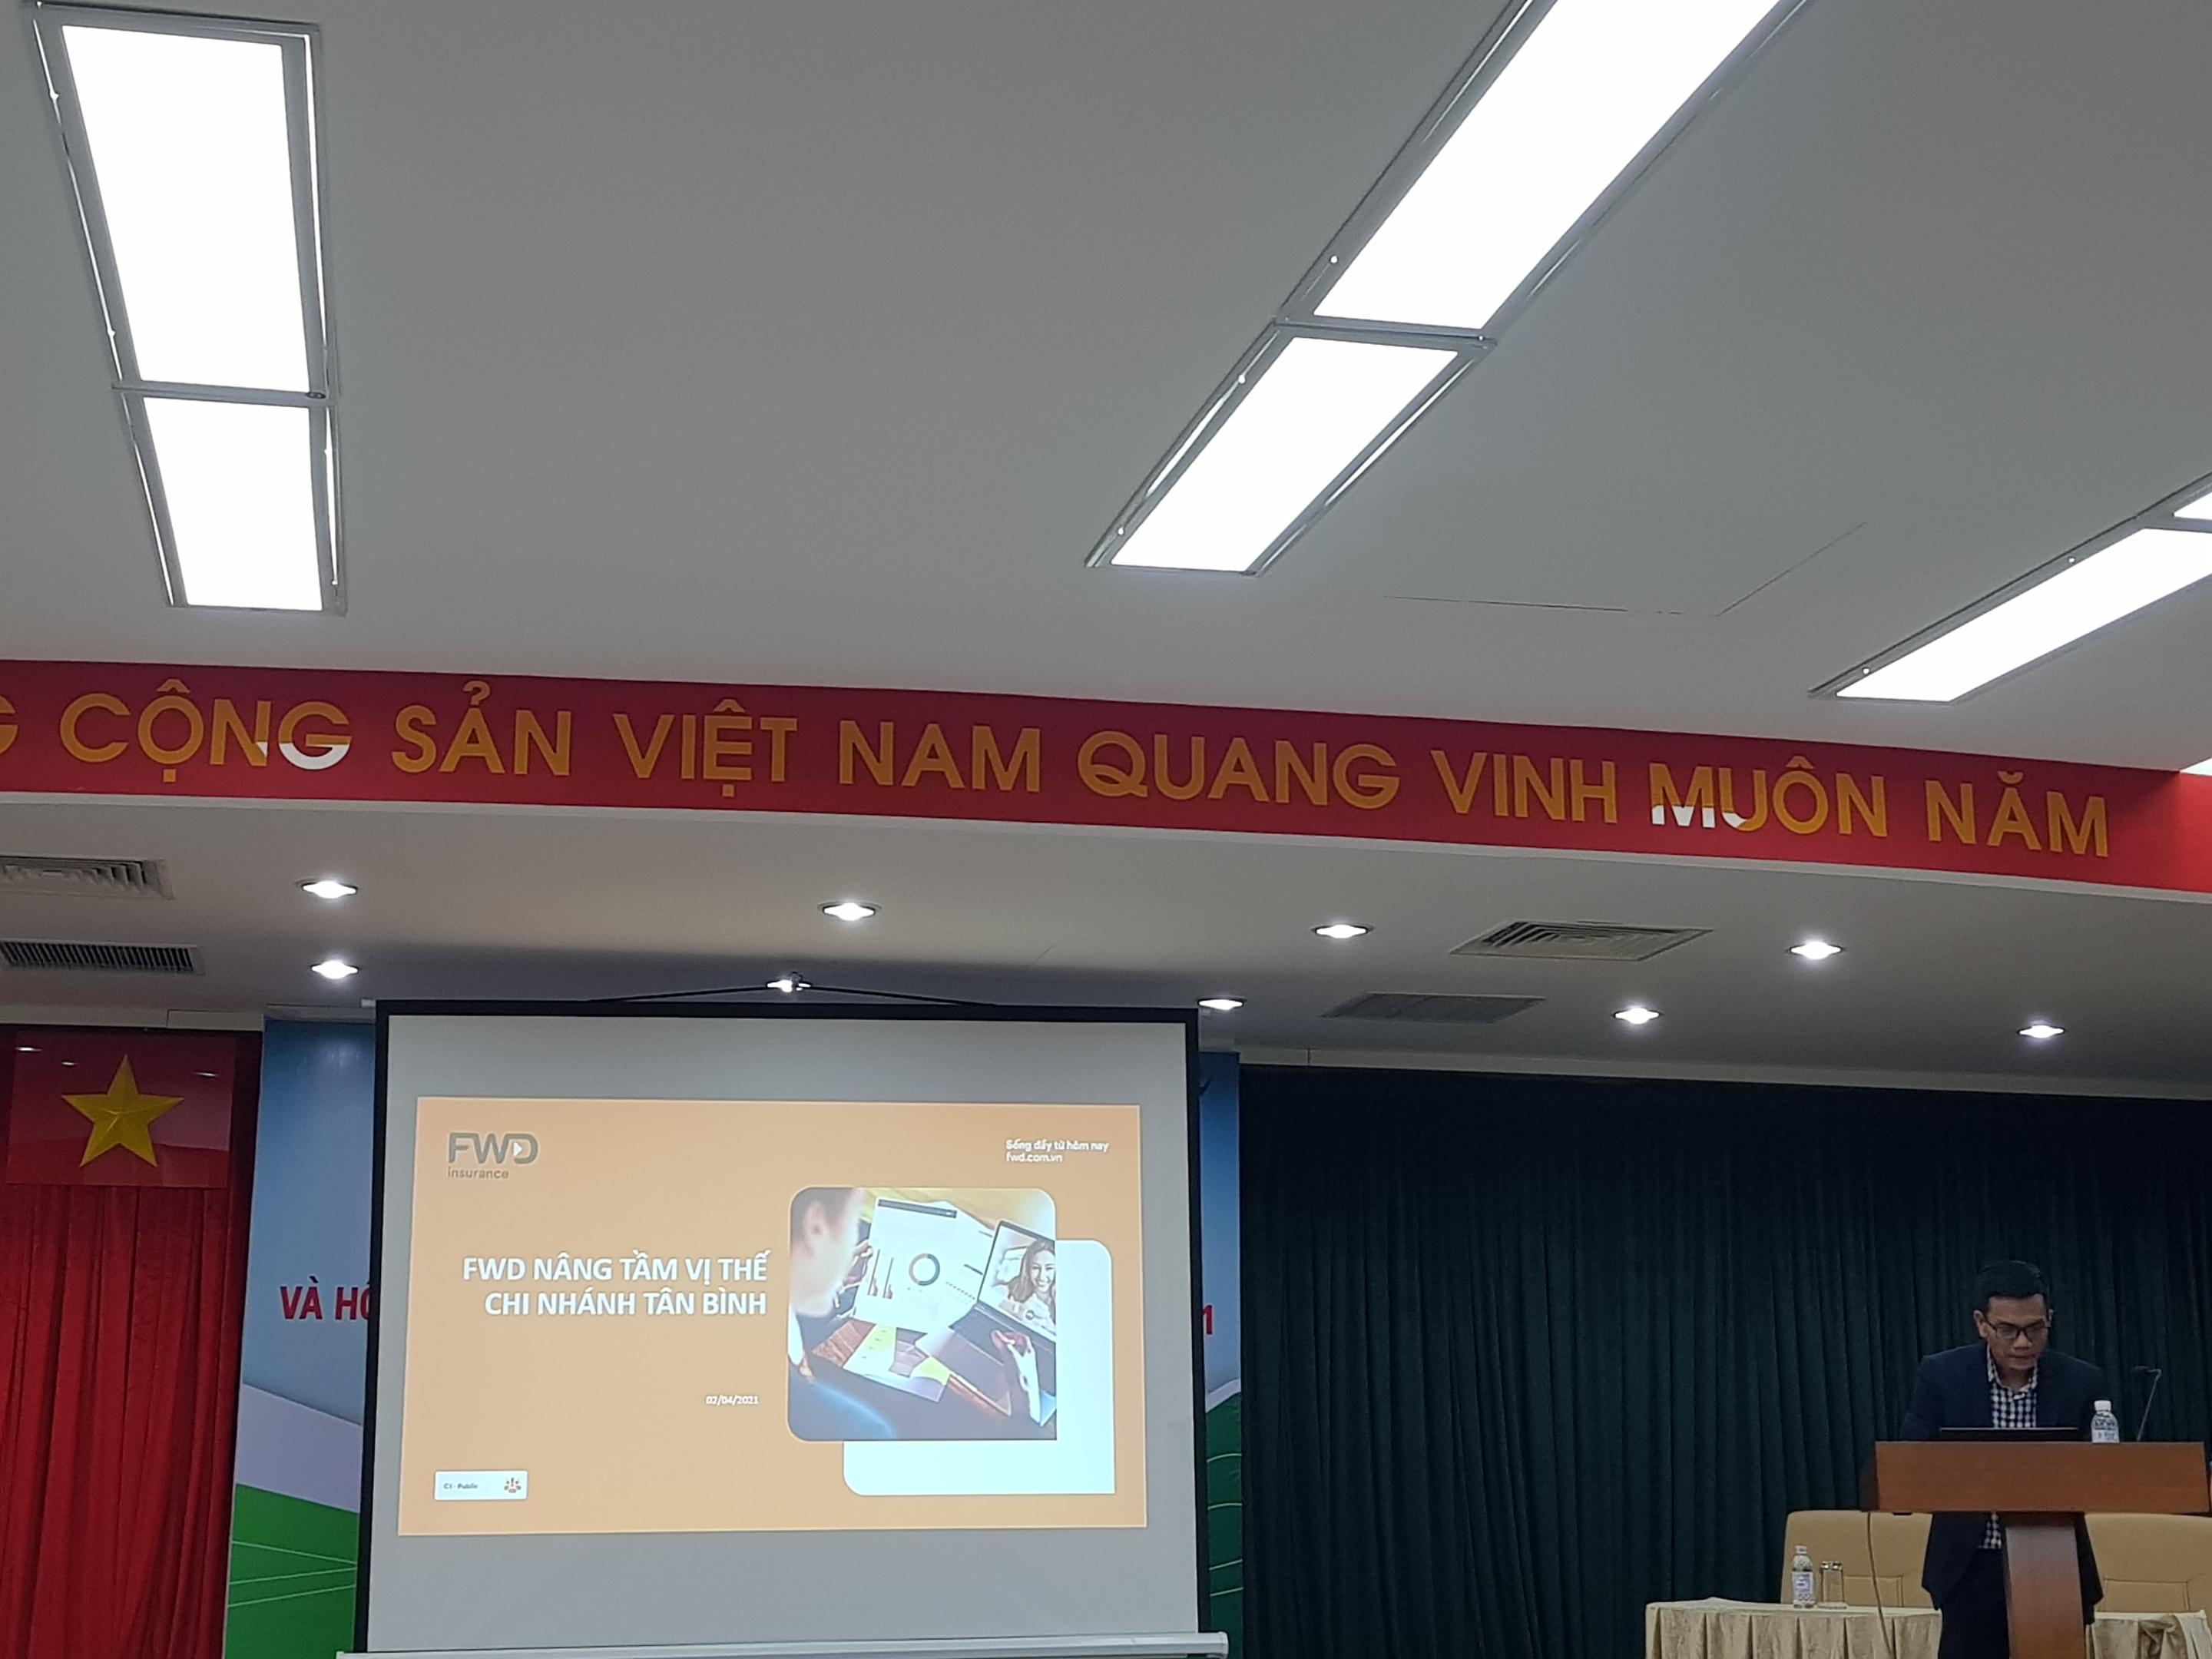 Vietcombank Tân Bình tổ chức buổi đào tạo sản phẩm bảo hiểm nhân thọ FWD